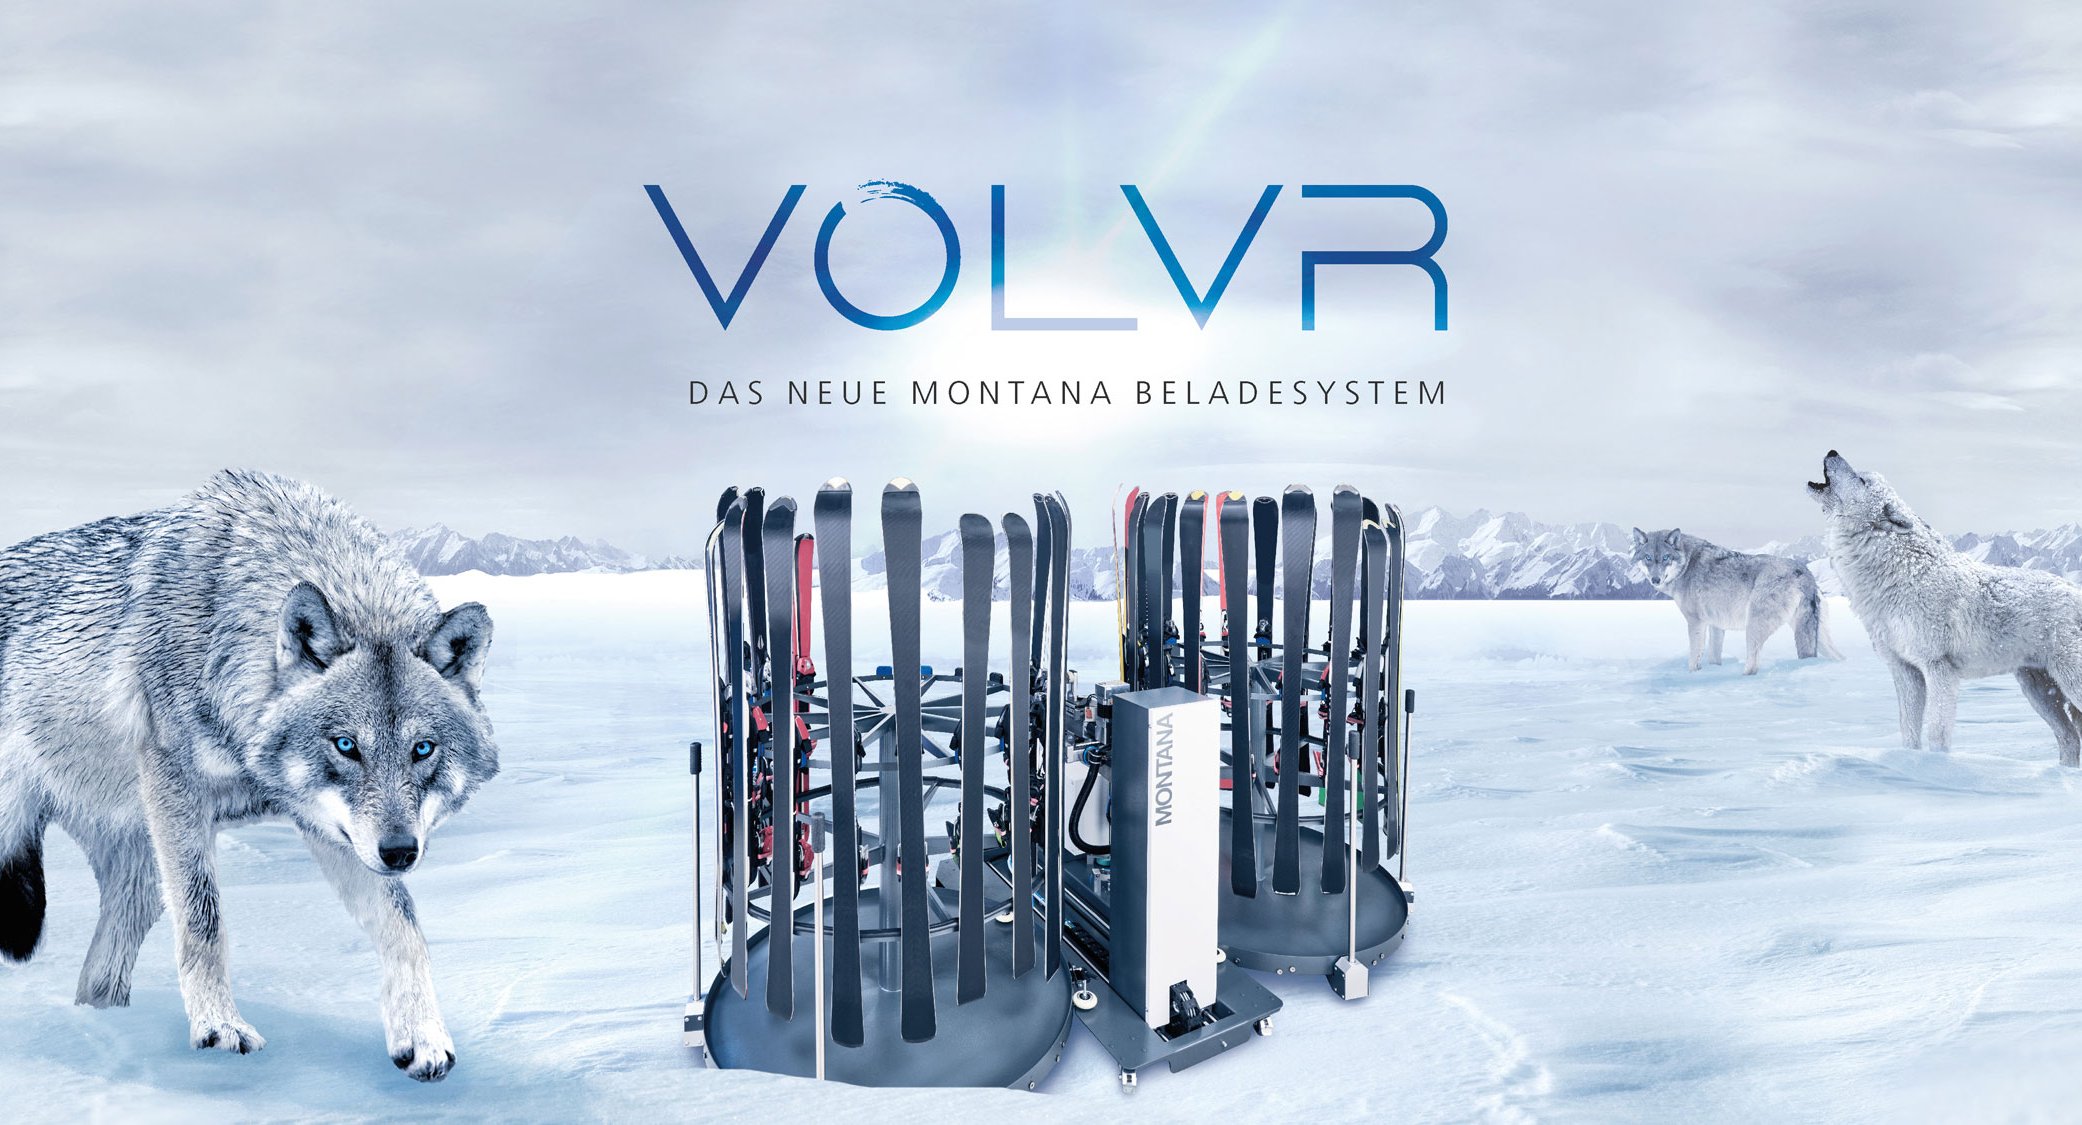 VOLVR Beladesystem für MONTANA Skiservice-Maschinen